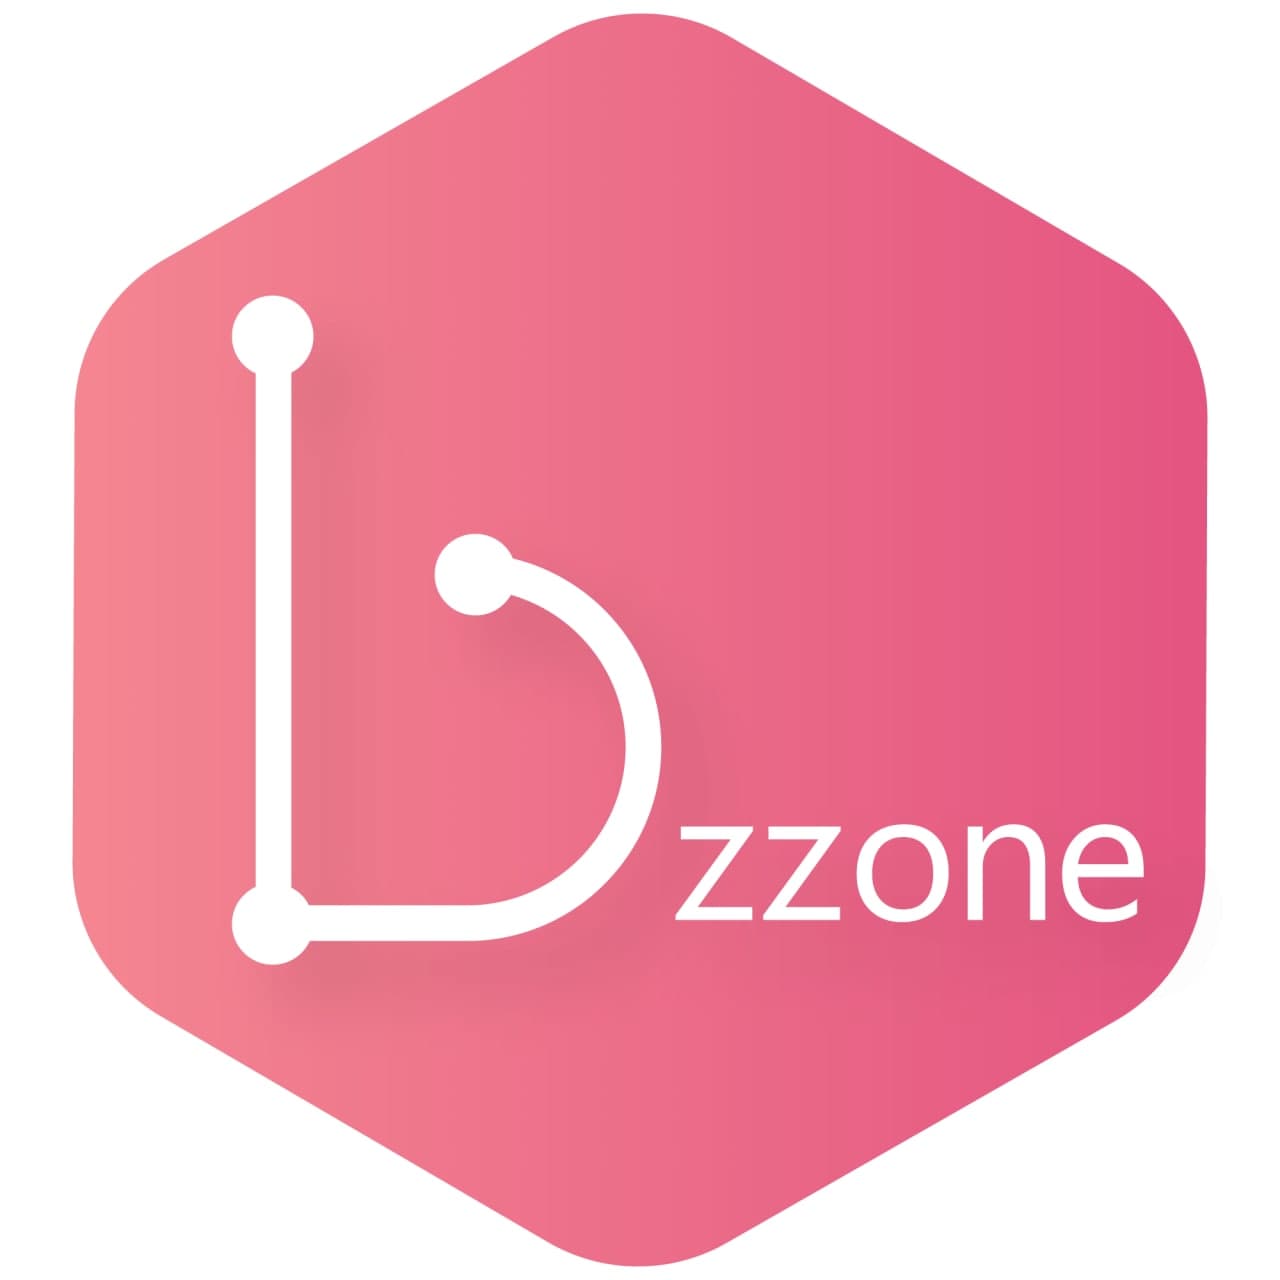 Bzzone logo